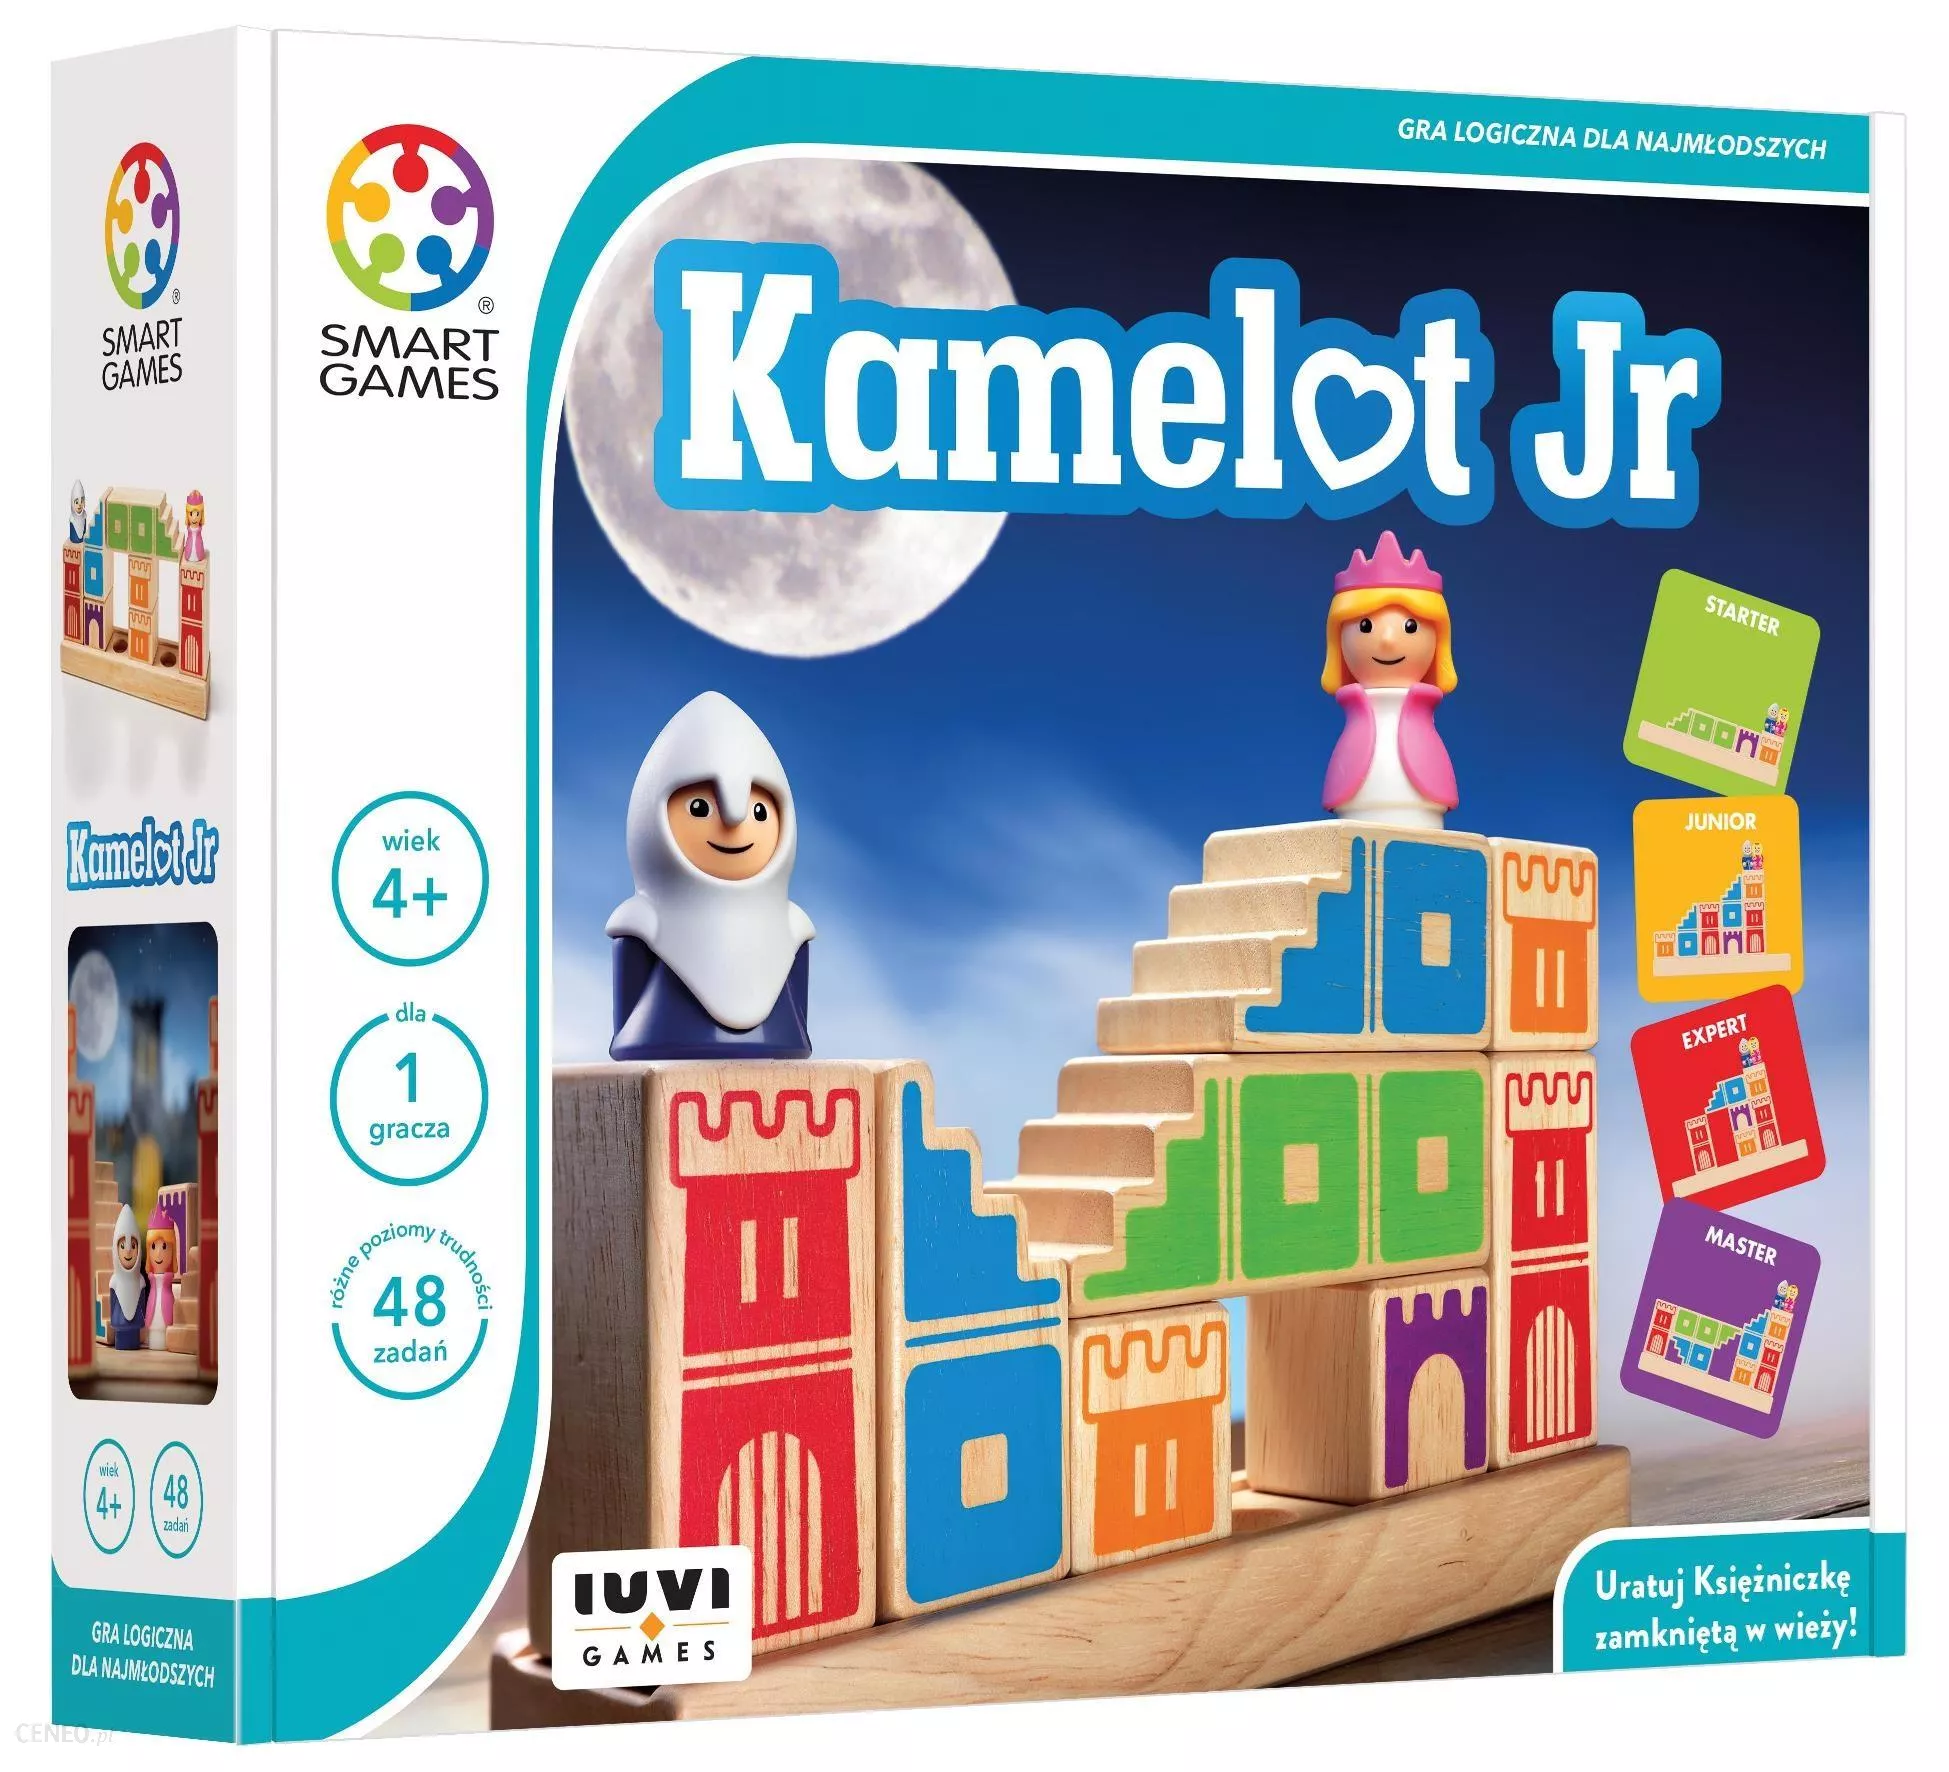 Kamelot Jr z serii Smart Games